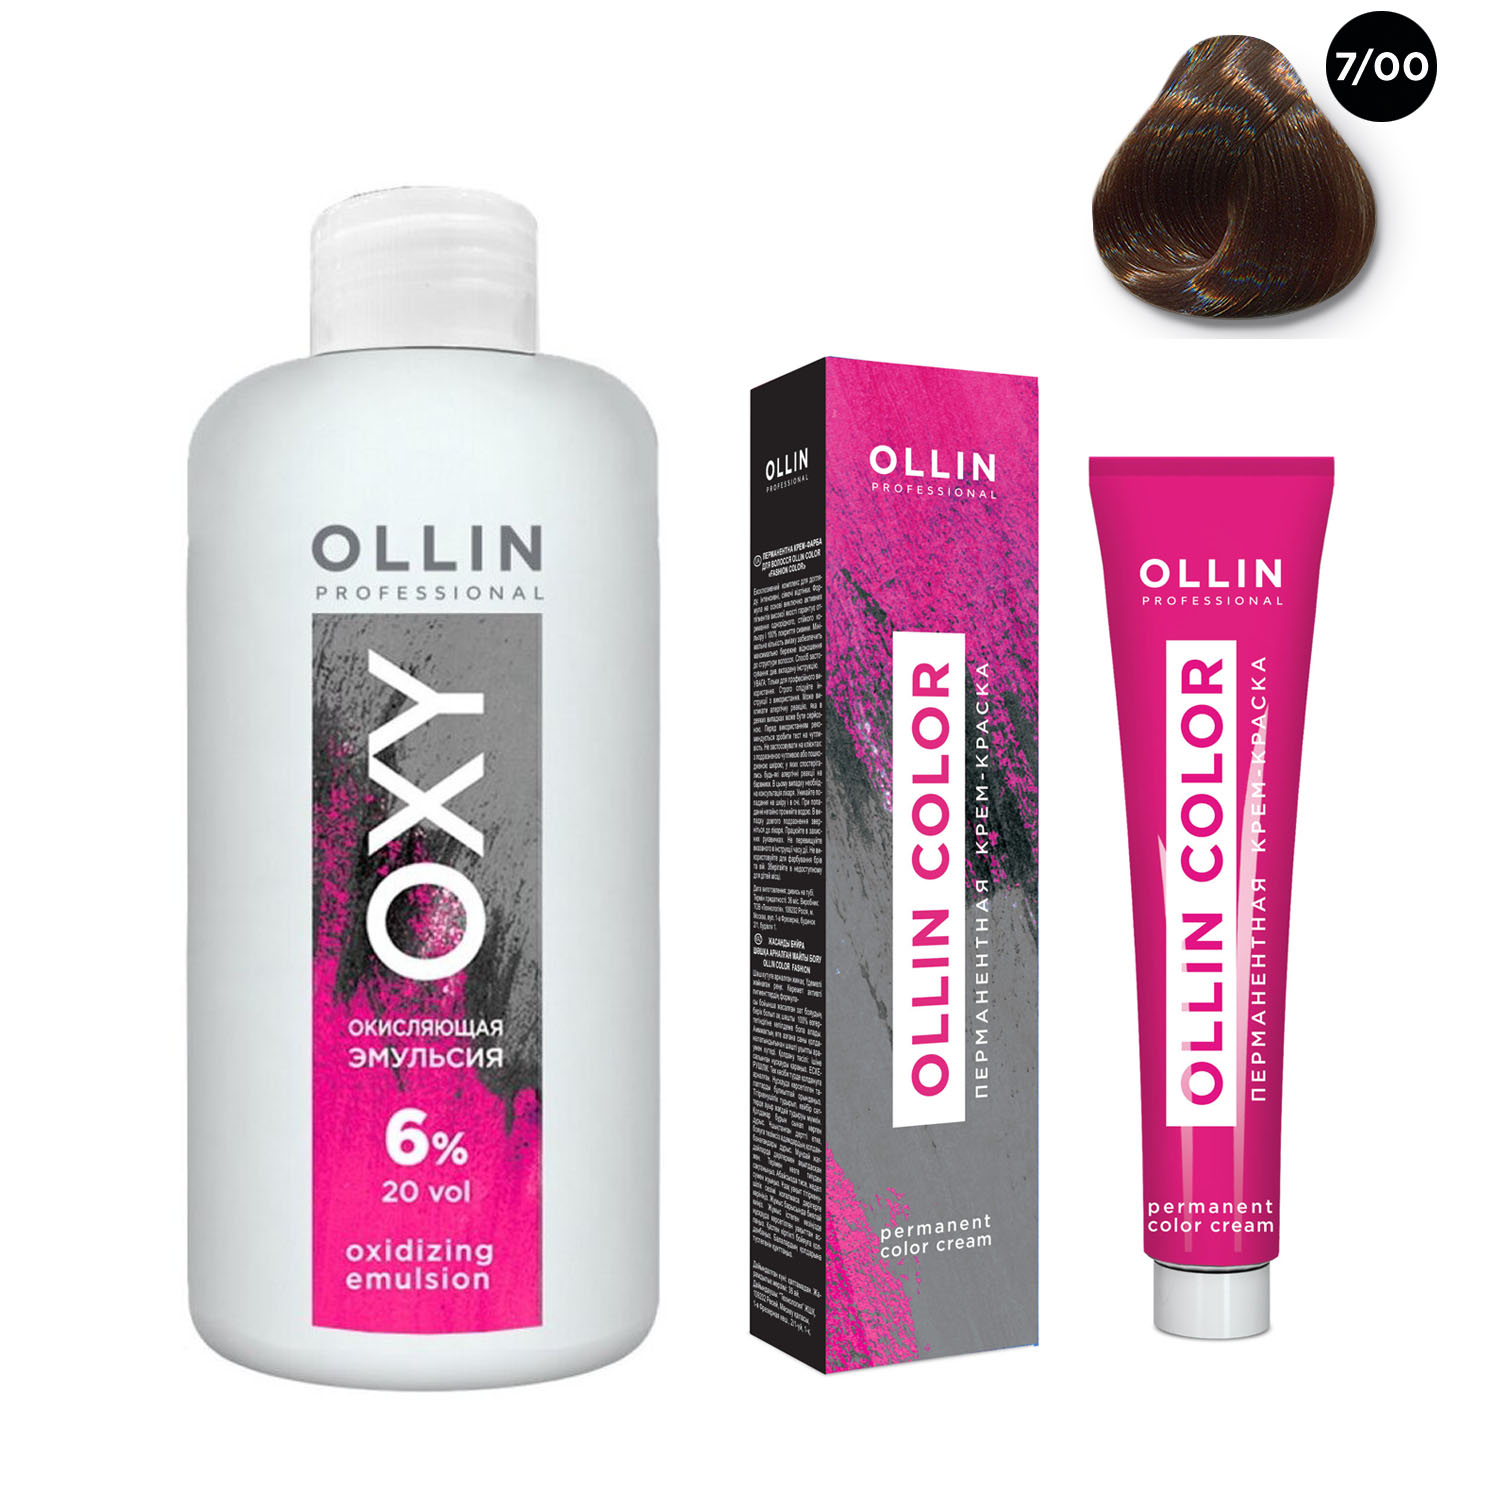 Ollin Professional Набор Перманентная крем-краска для волос Ollin Color оттенок 7/00 русый глубокий 100 мл + Окисляющая эмульсия Oxy 6% 150 мл (Ollin Professional, Ollin Color)